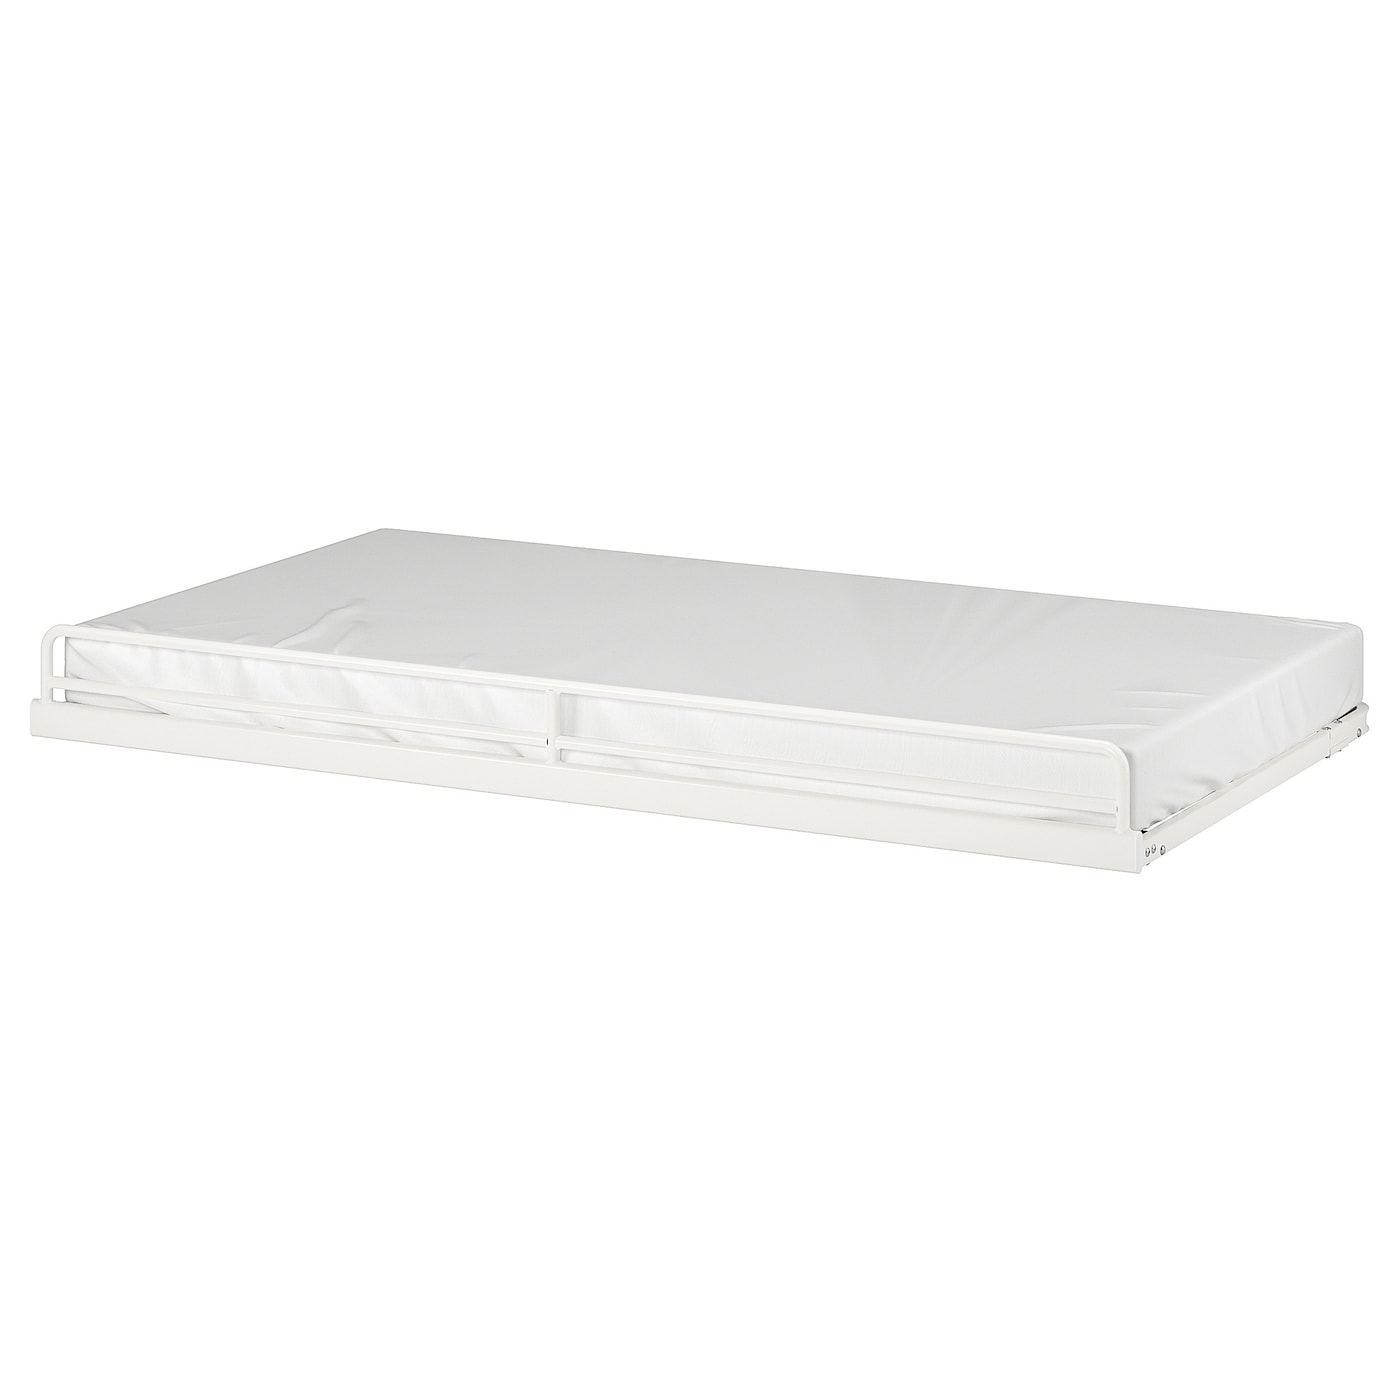 Дополнительная выдвижная кровать - IKEA VITVAL, 200х90 см, белый, ВИТВАЛ ИКЕА